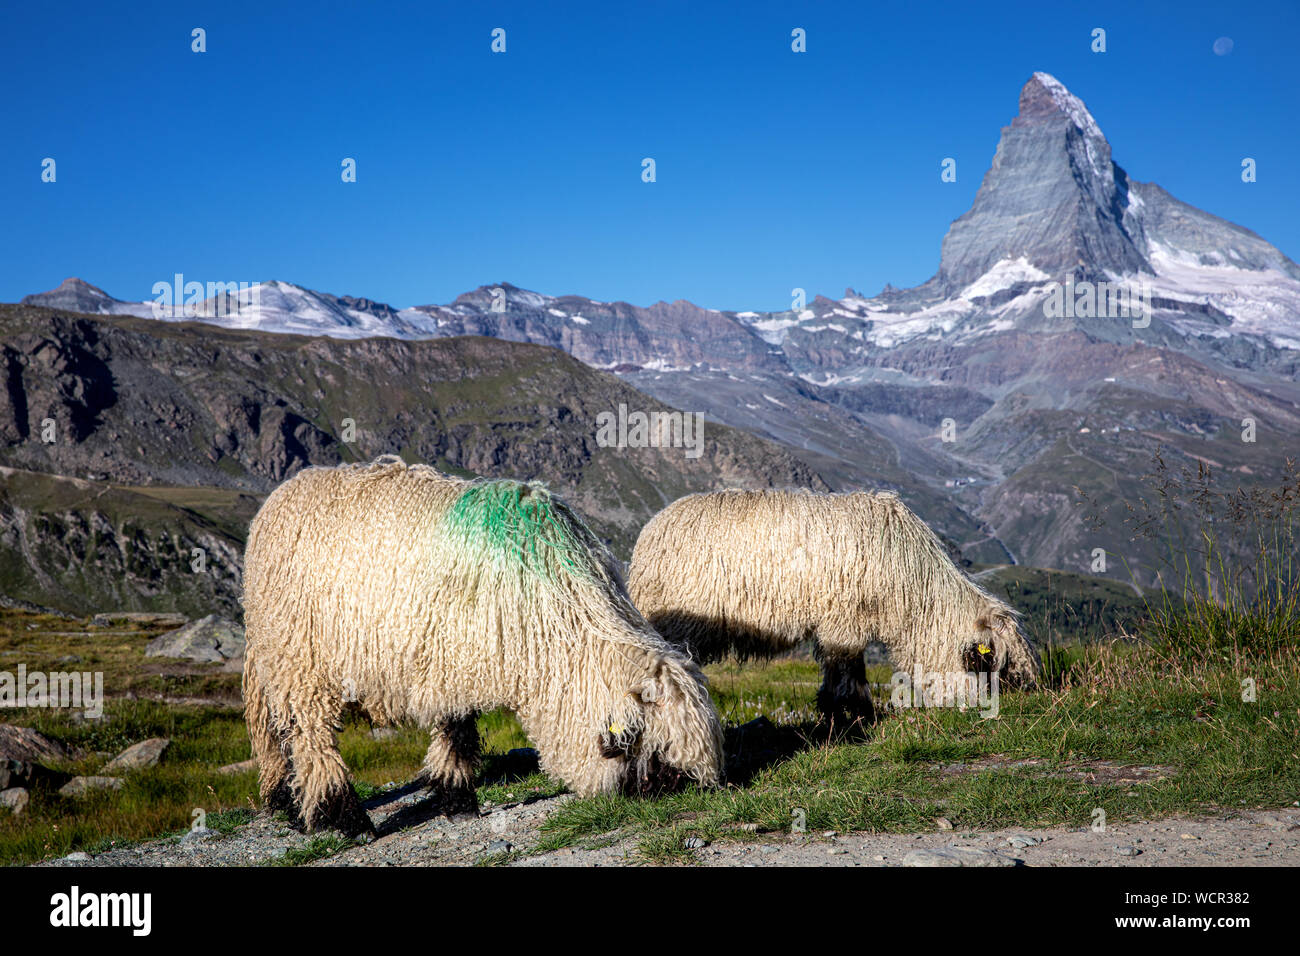 Wallis schwarze Nase Schafe am Fuße des Matterhorn, Zermatt, Wallis, Schweiz Stockfoto